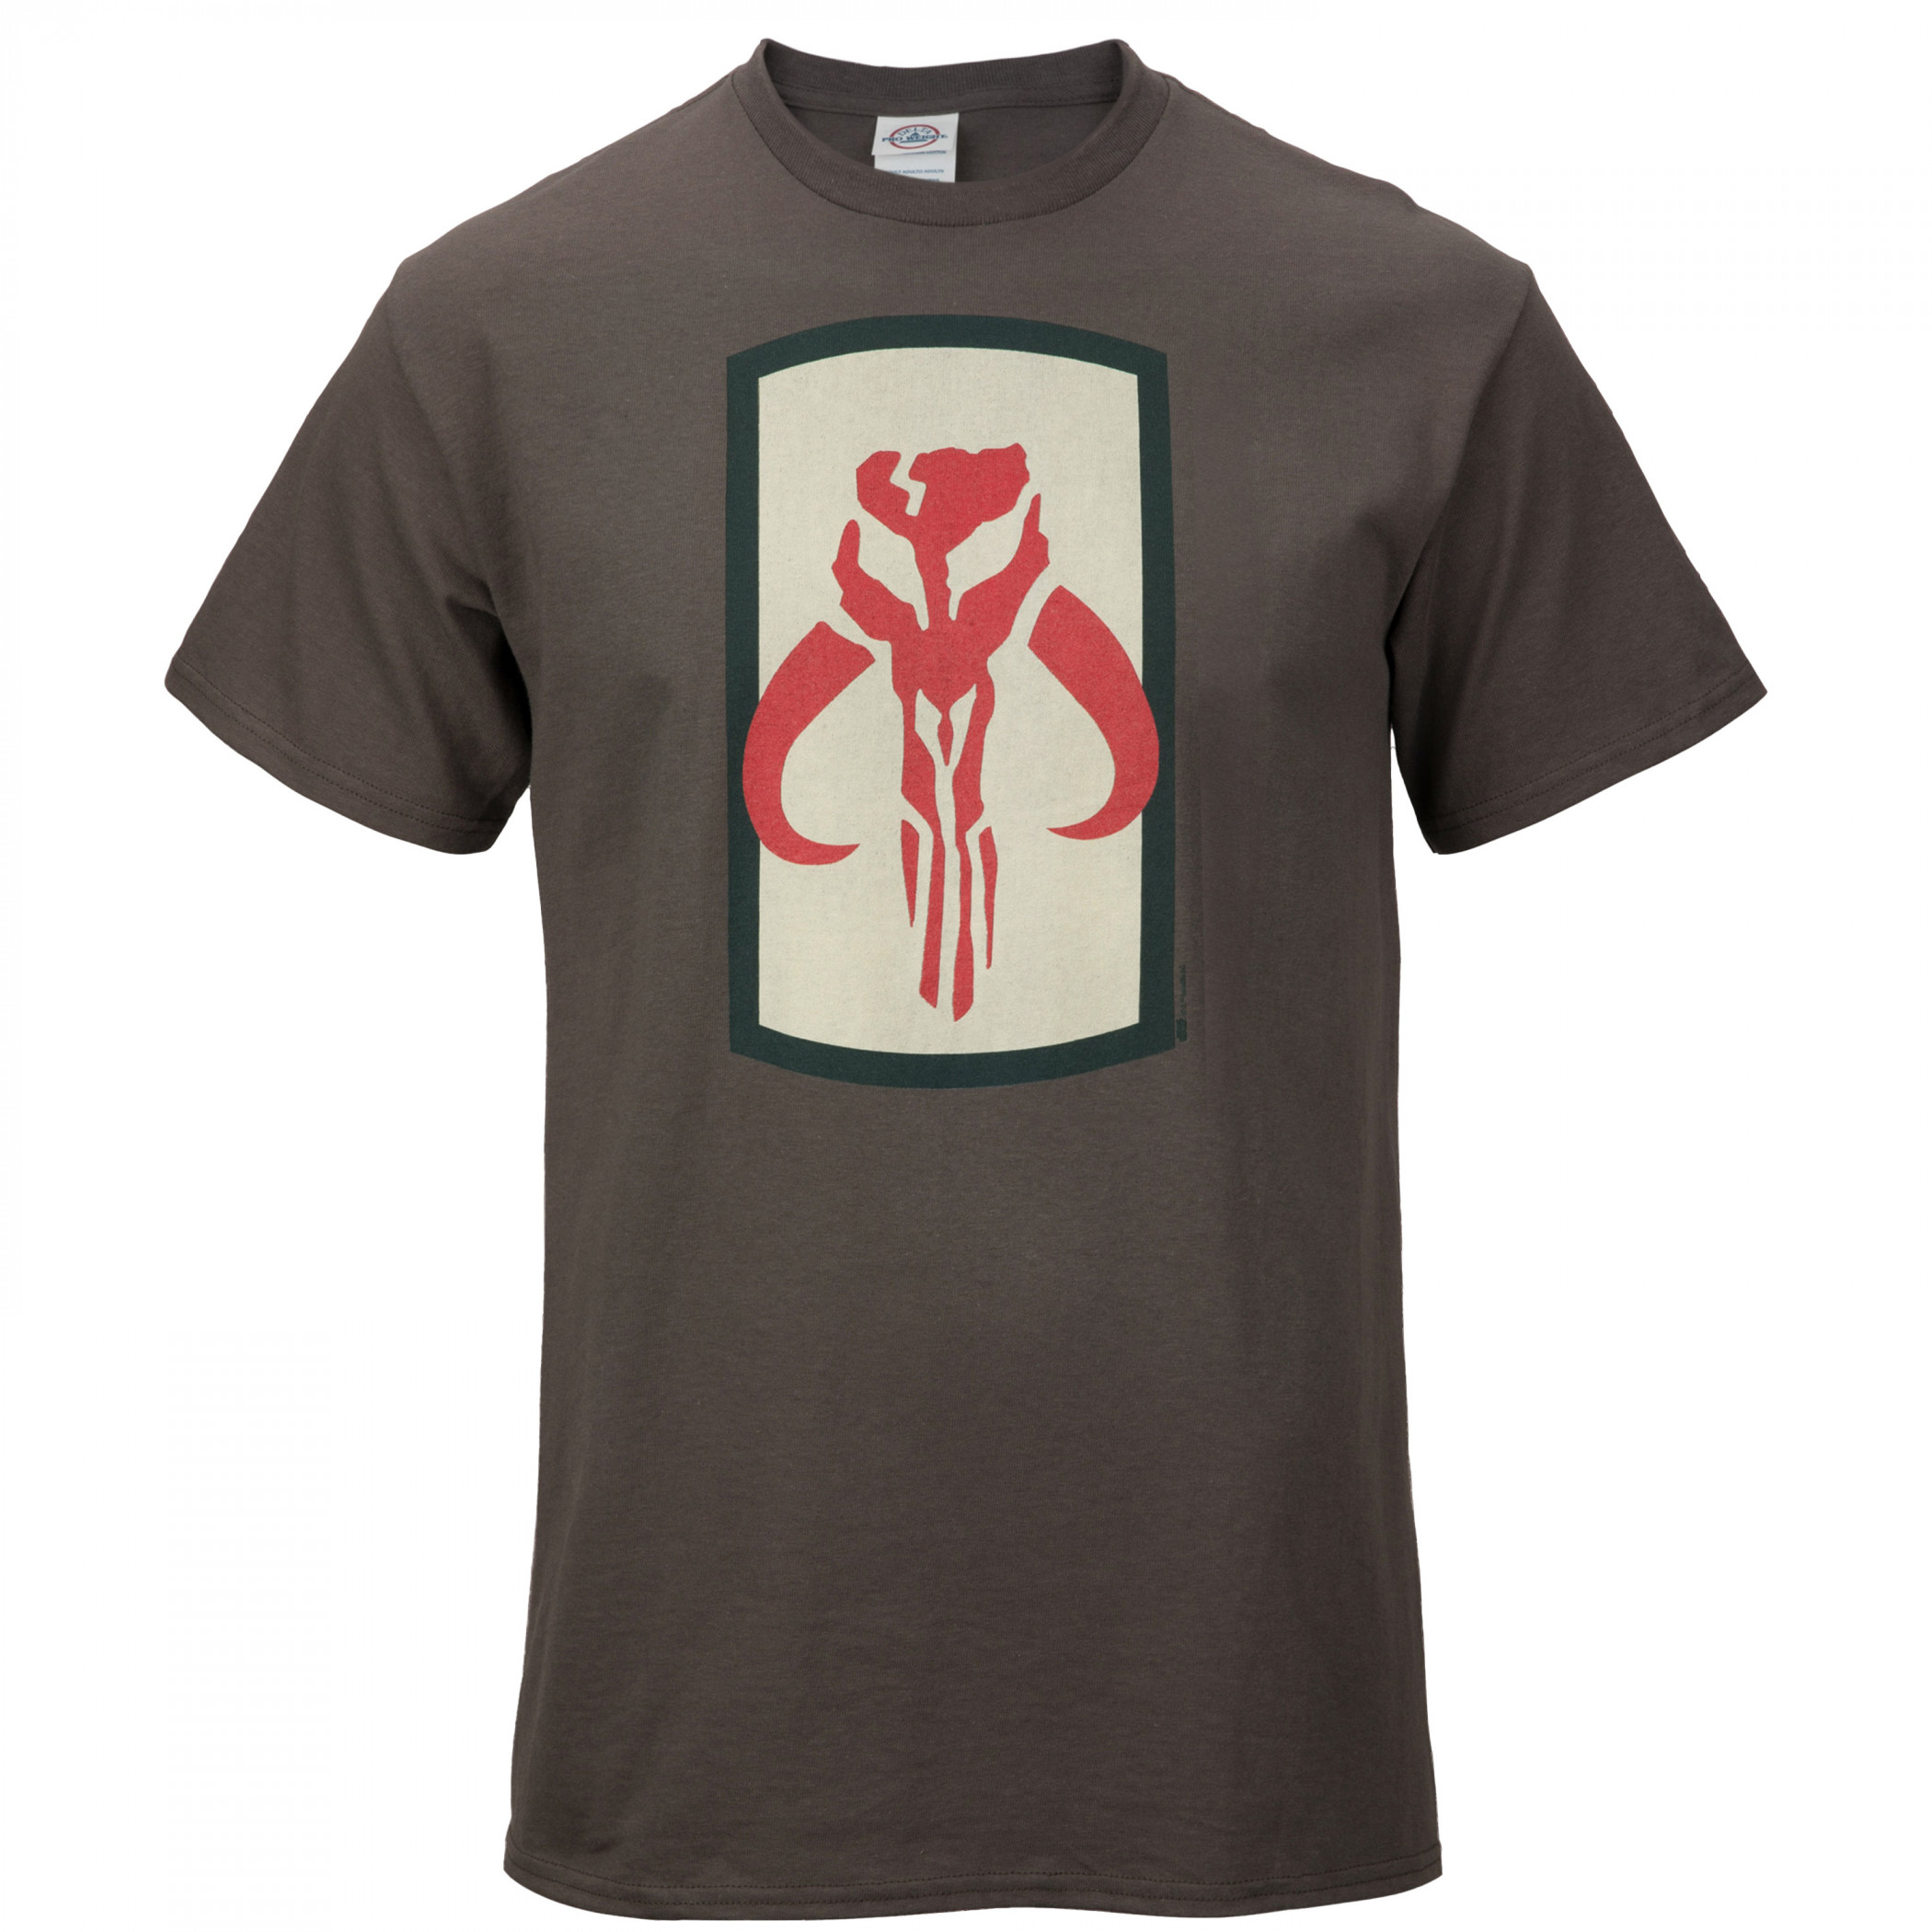 Star Wars Mandalorian Mythosaur Skull Logo T-Shirt